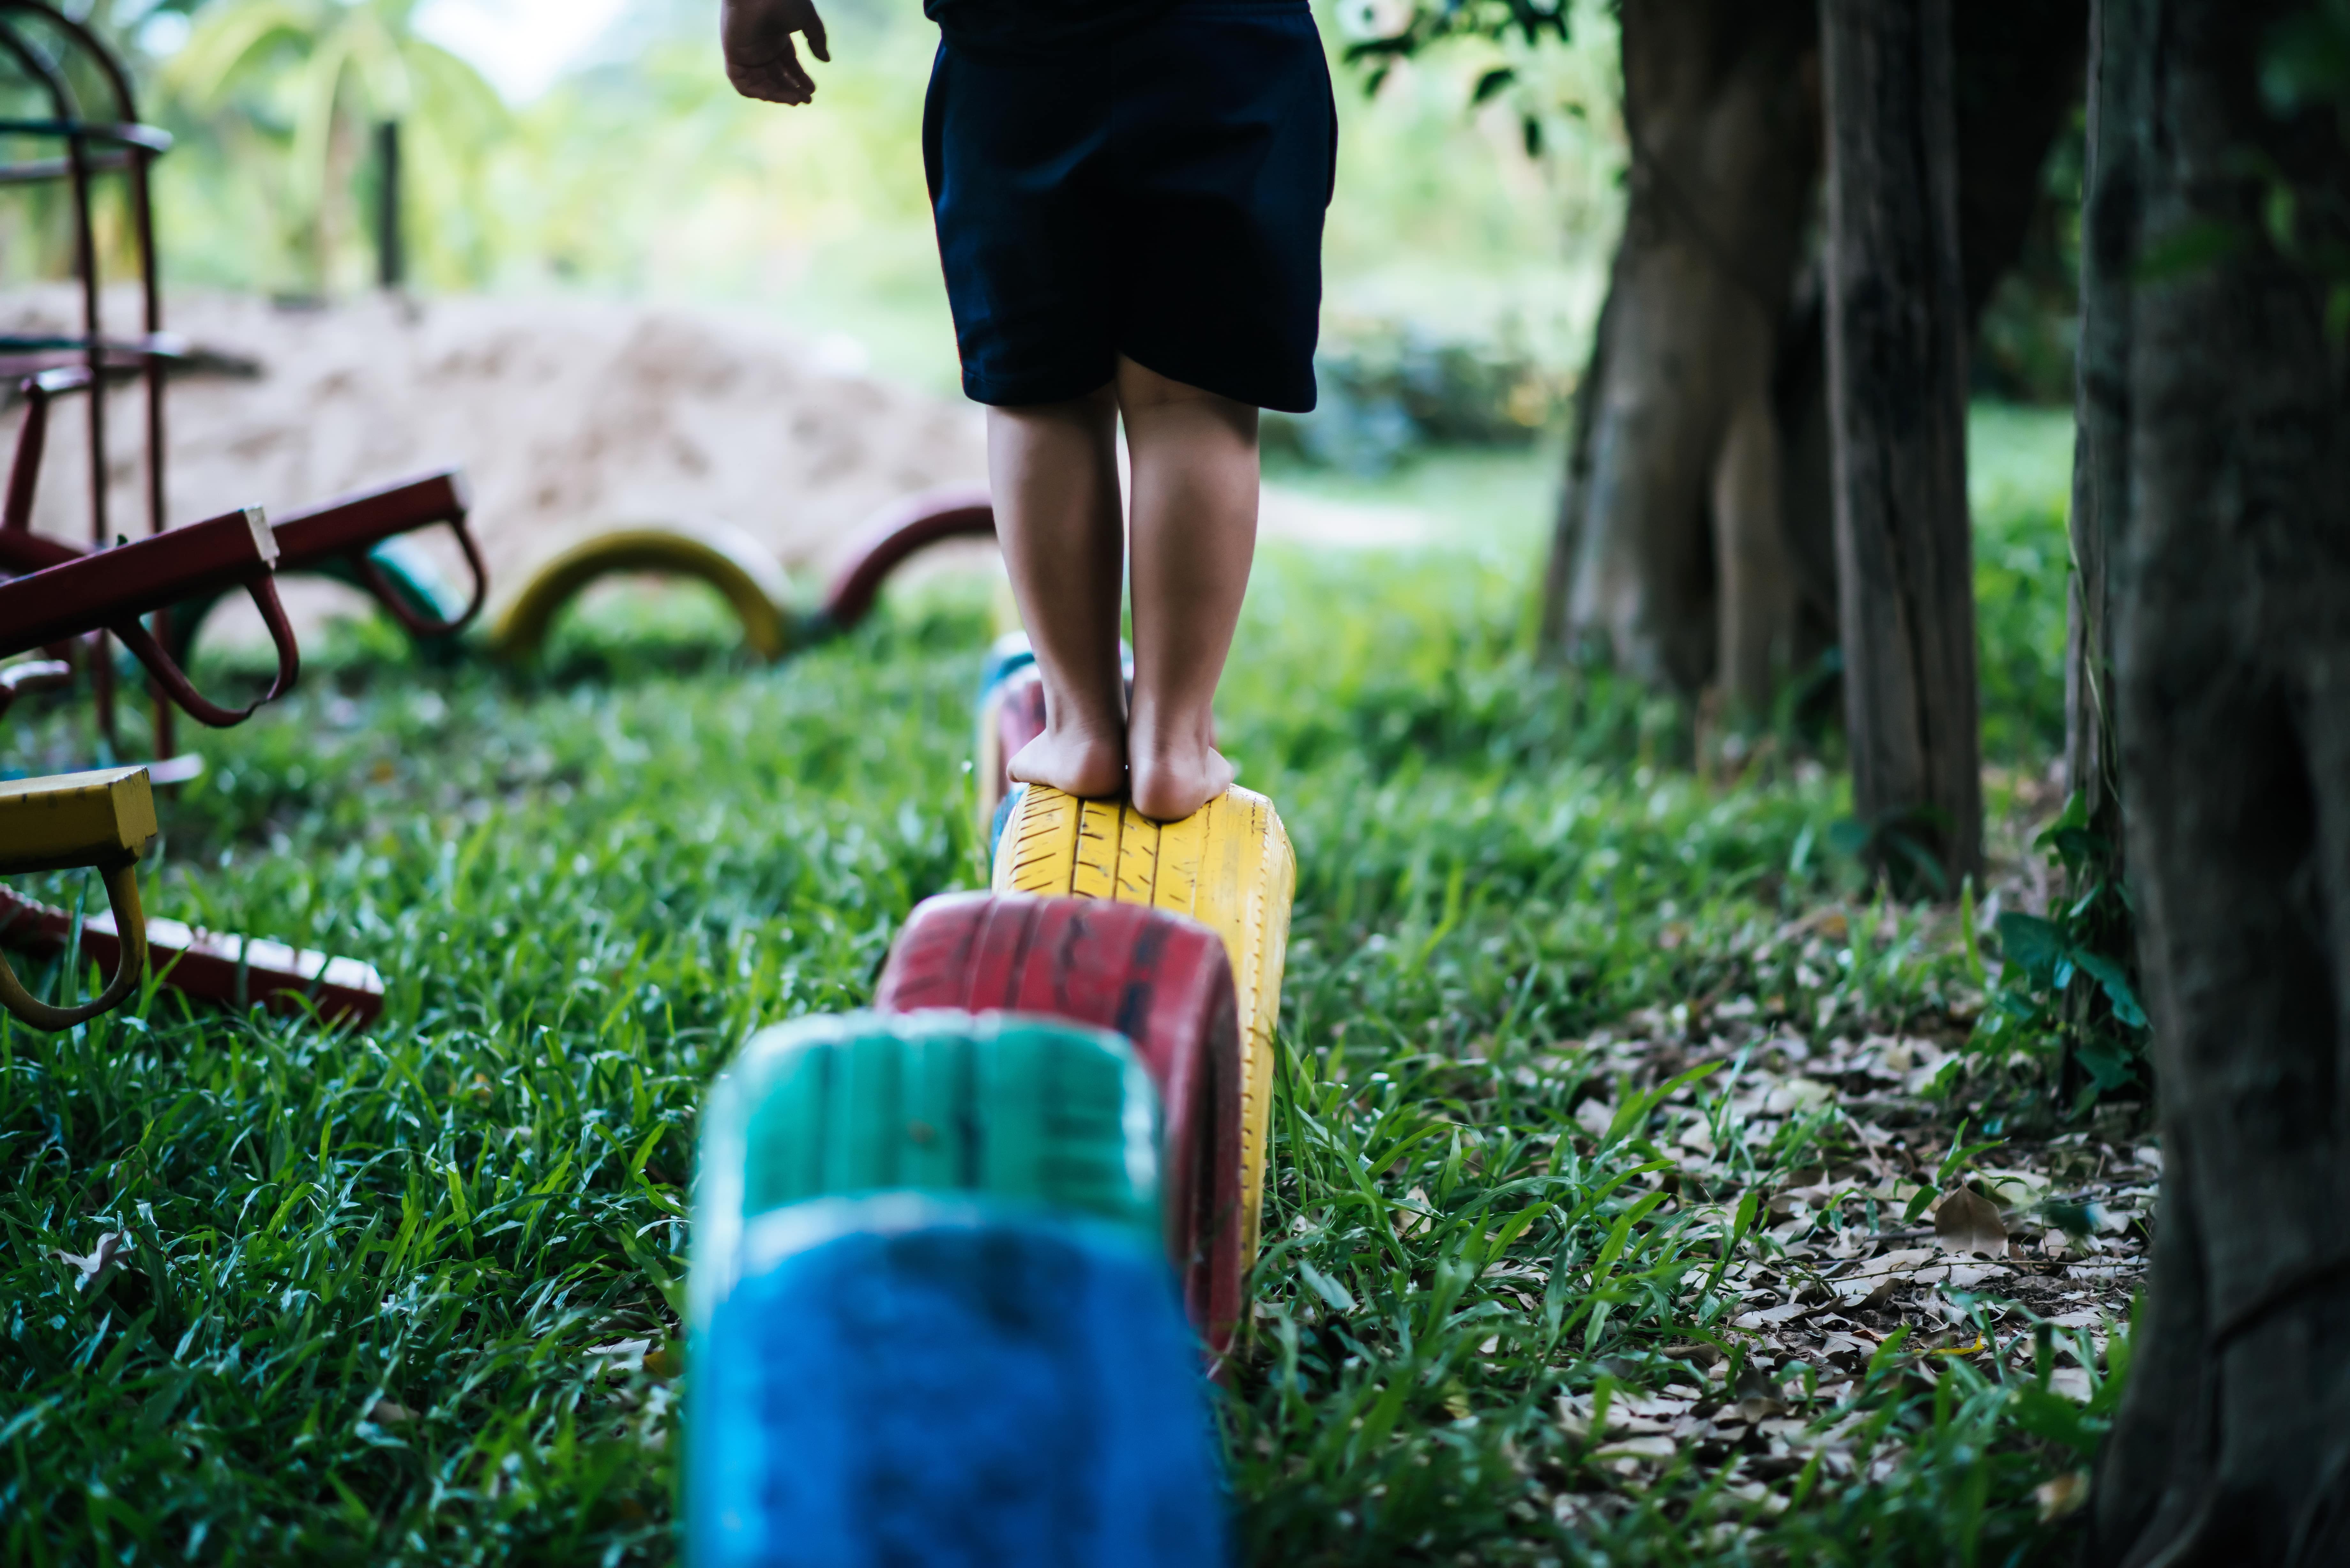 Bild von freepik zeigt ein Kind beim Spielen im Freien - eine Aktivität, die therapinum anbieten möchte